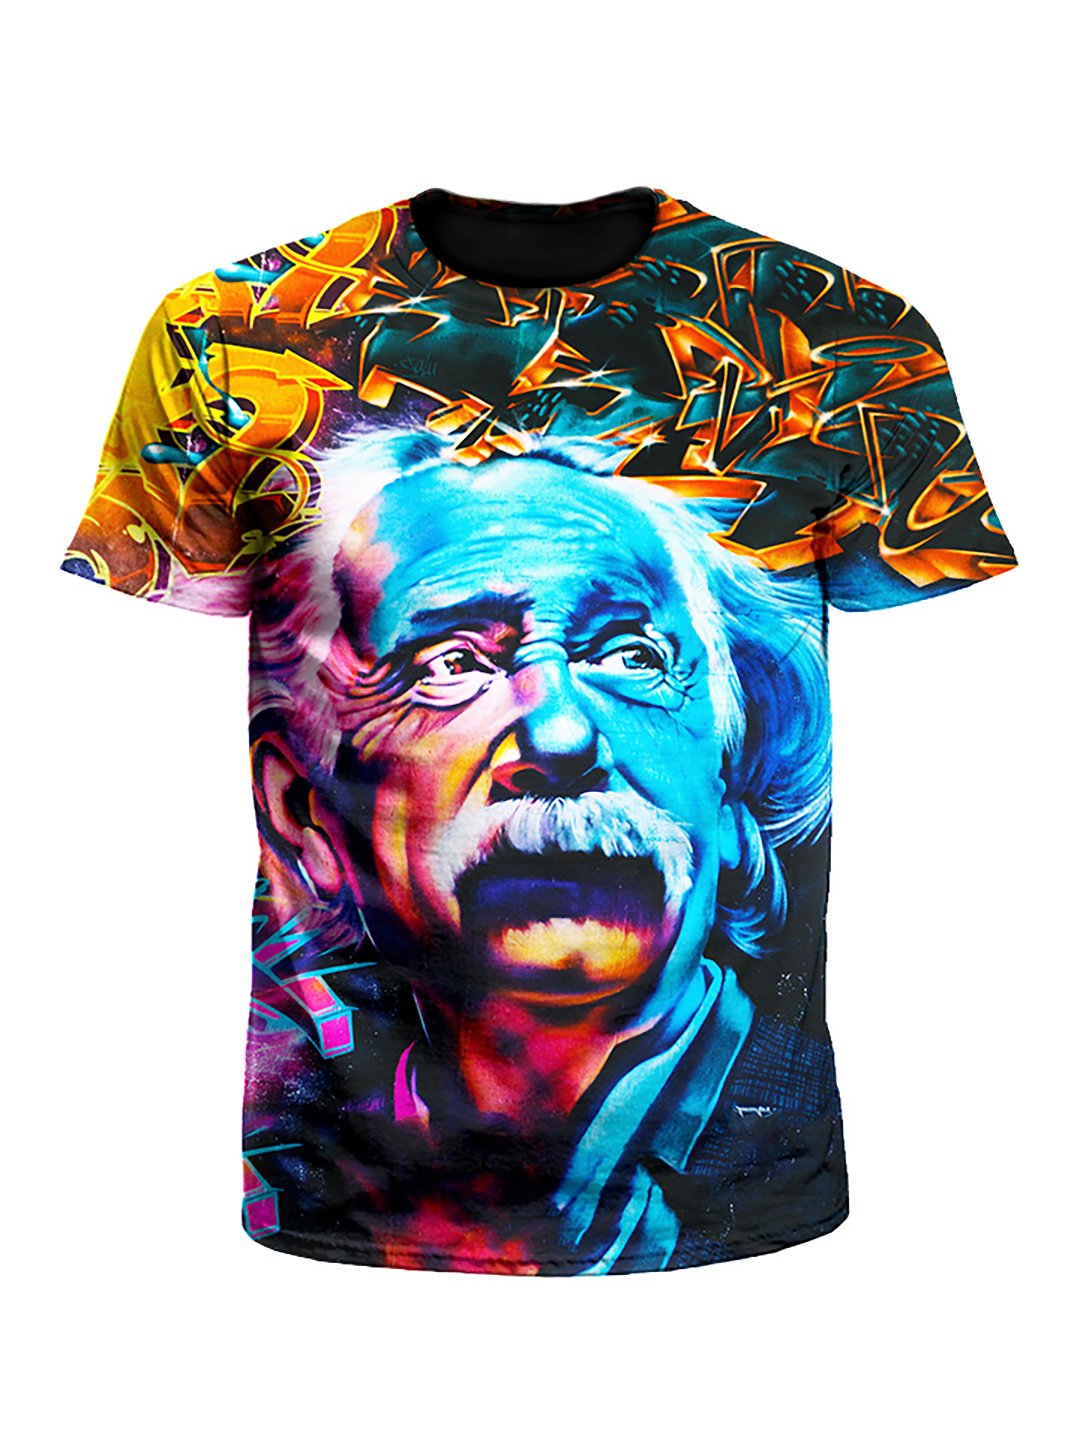 Albert Einstein Graffiti Portrait Unisex T-Shirt - Boogie Threads